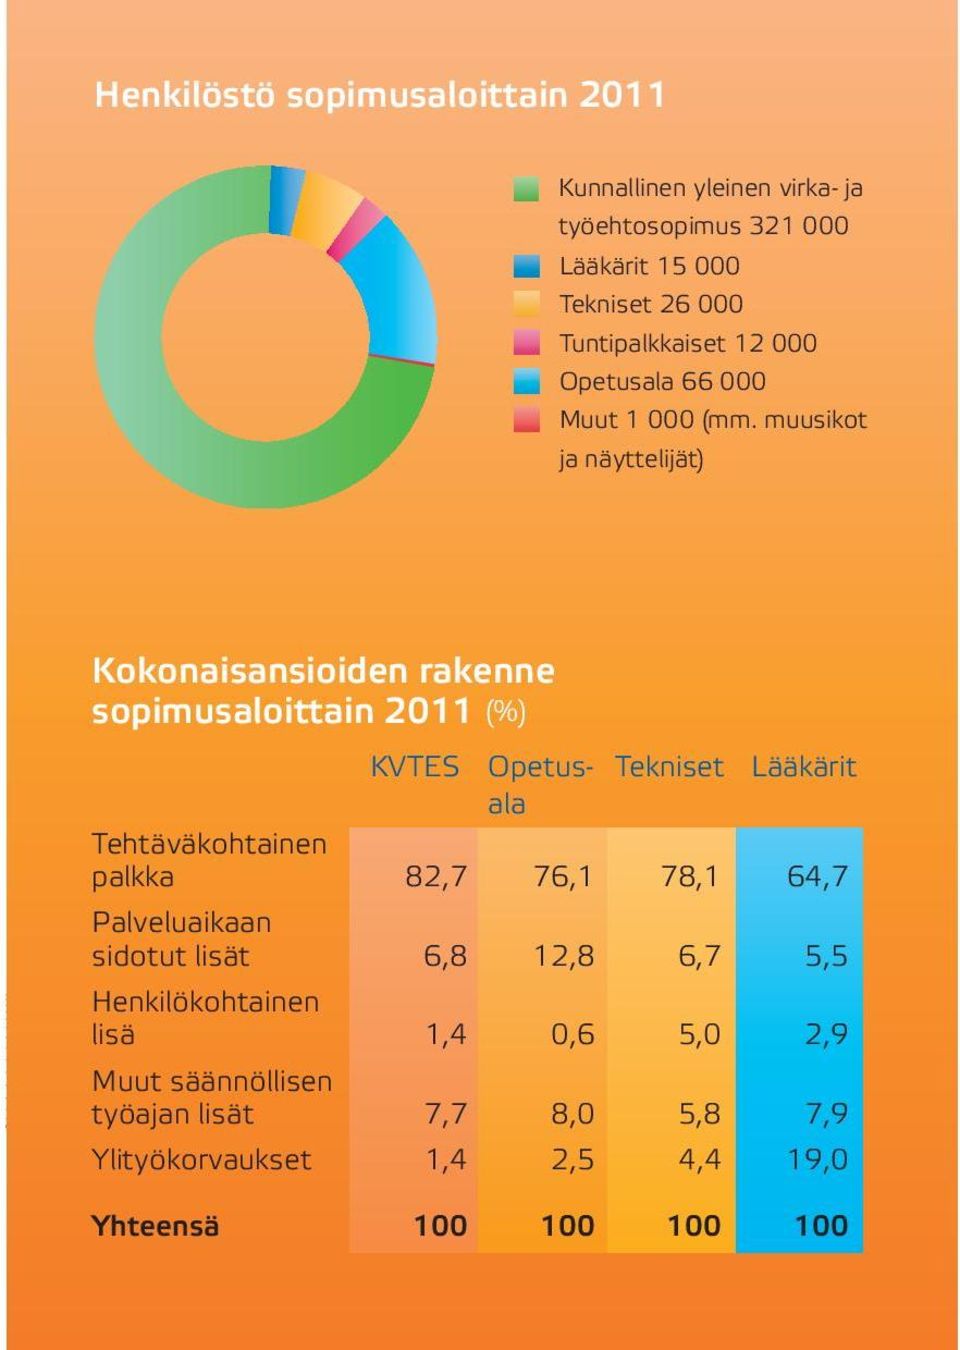 muusikot ja näyttelijät) Kokonaisansioiden rakenne sopimusaloittain 2011 (%) KVTES Opetus- Tekniset Lääkärit ala Tehtäväkohtainen